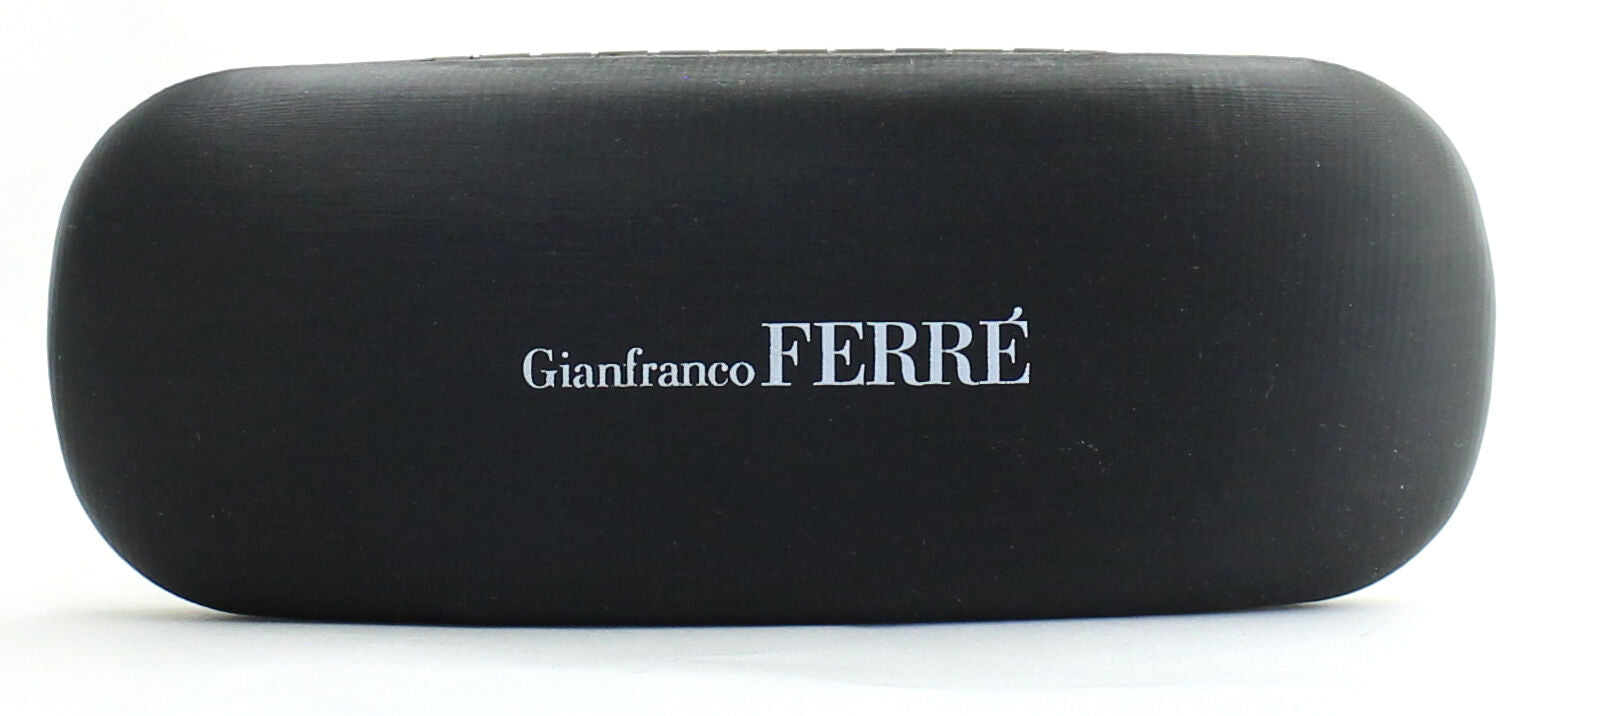 GIANFRANCO FERRE GF26602 Eyewear FRAMES Eyeglasses RX Optical Glasses ITALY-BNIB